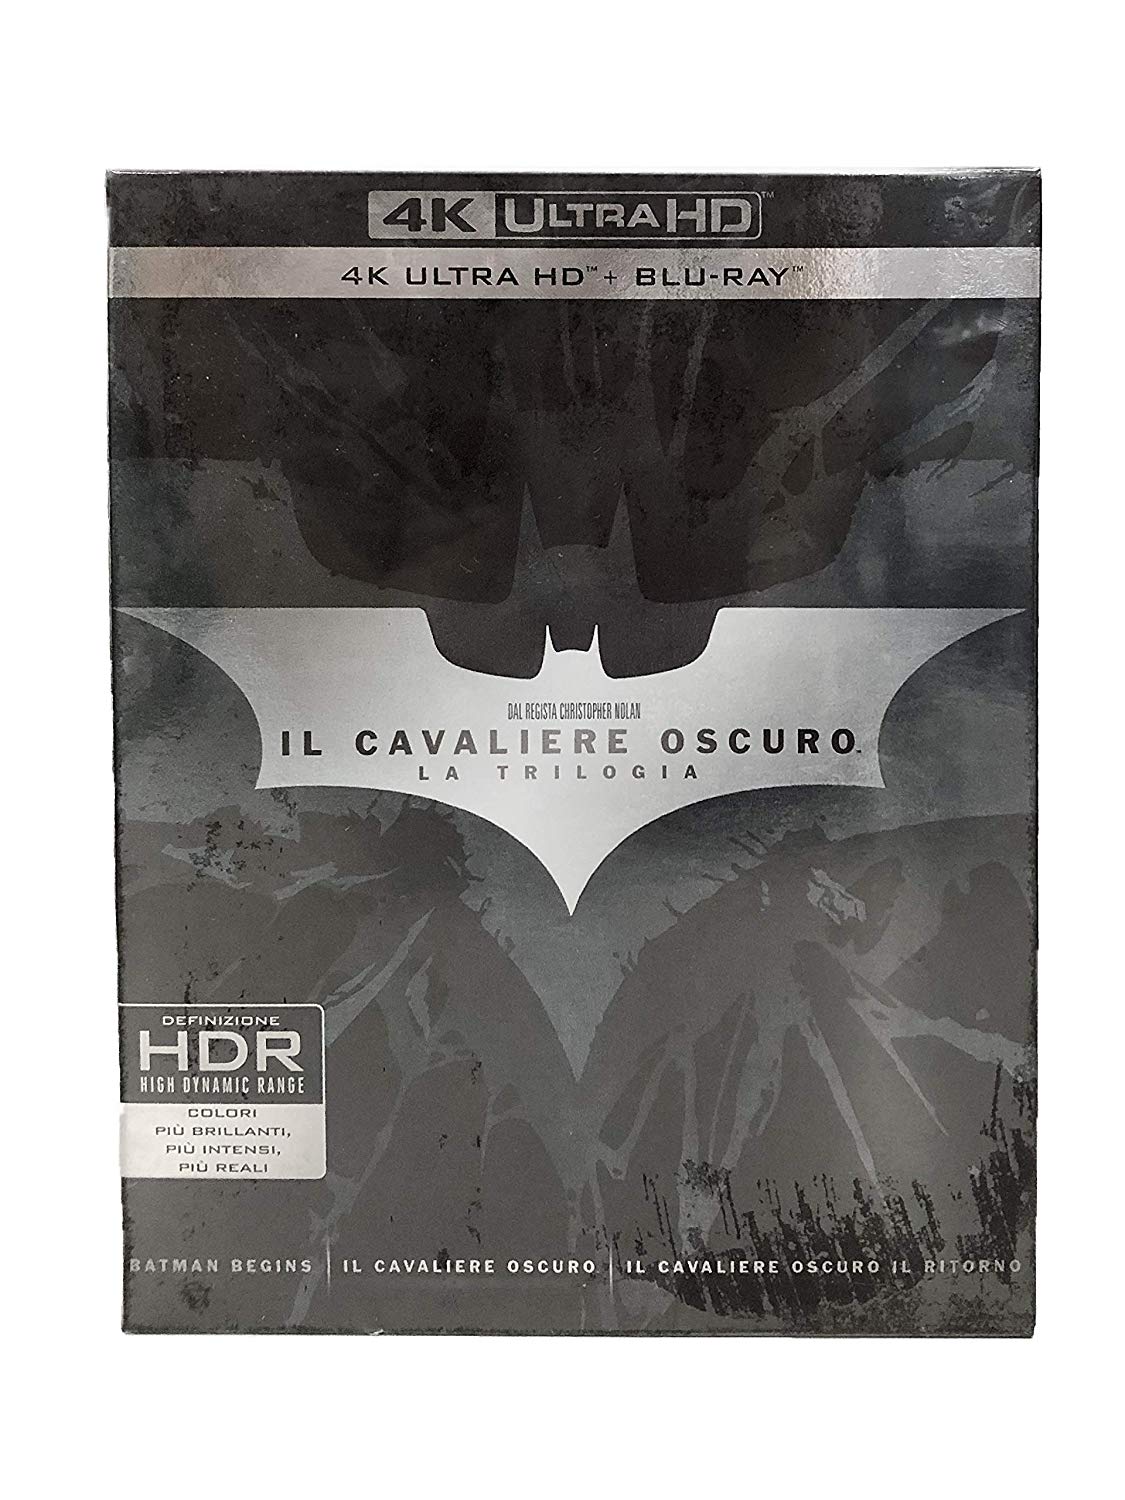 Blu-Ray Cavaliere Oscuro (Il) - La Trilogia (9 4K Ultra Hd+Blu-Ray) NUOVO SIGILLATO, EDIZIONE DEL 03/01/2018 SUBITO DISPONIBILE